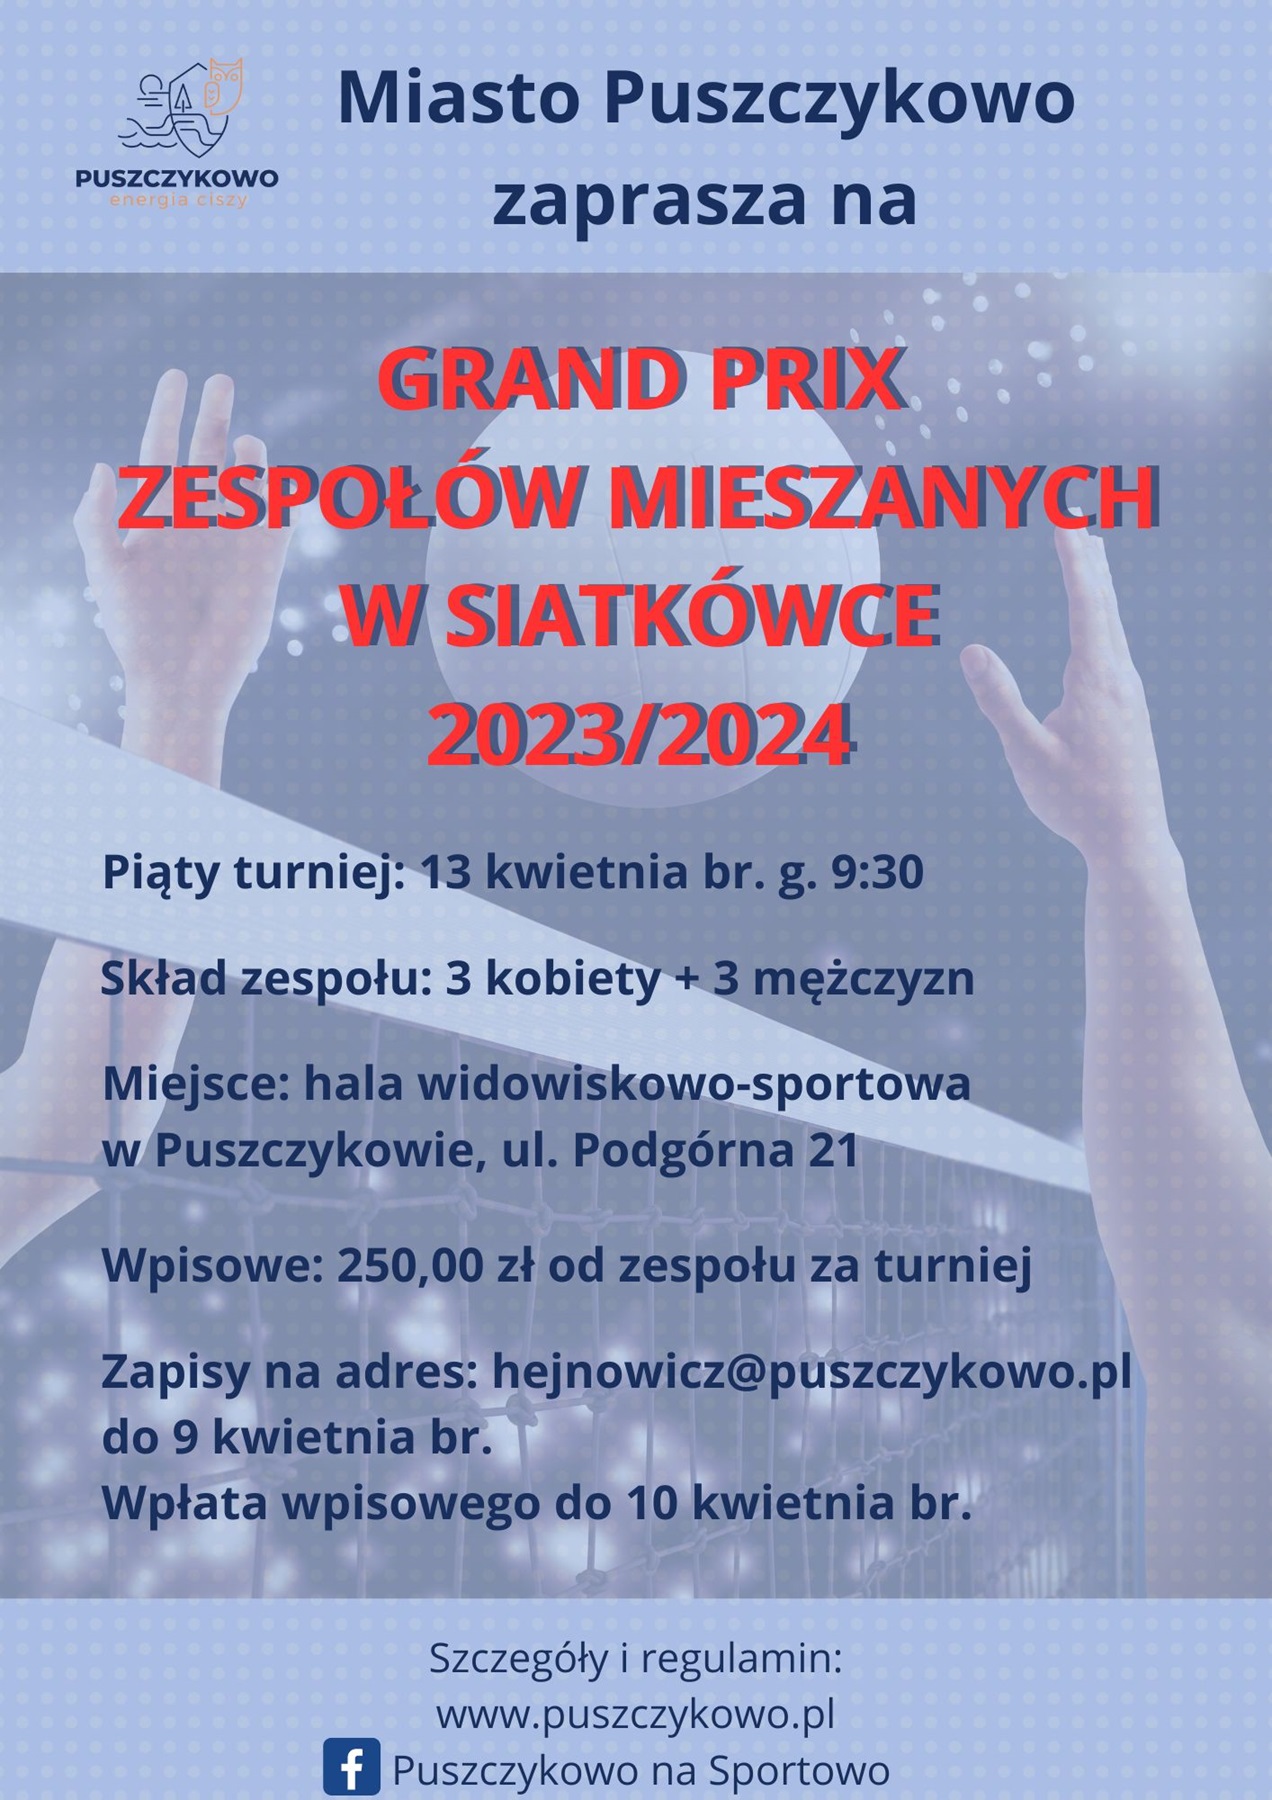 Zapraszamy na kolejny turniej w ramach Grand Prix Zespołów Mieszanych w siatkówce.